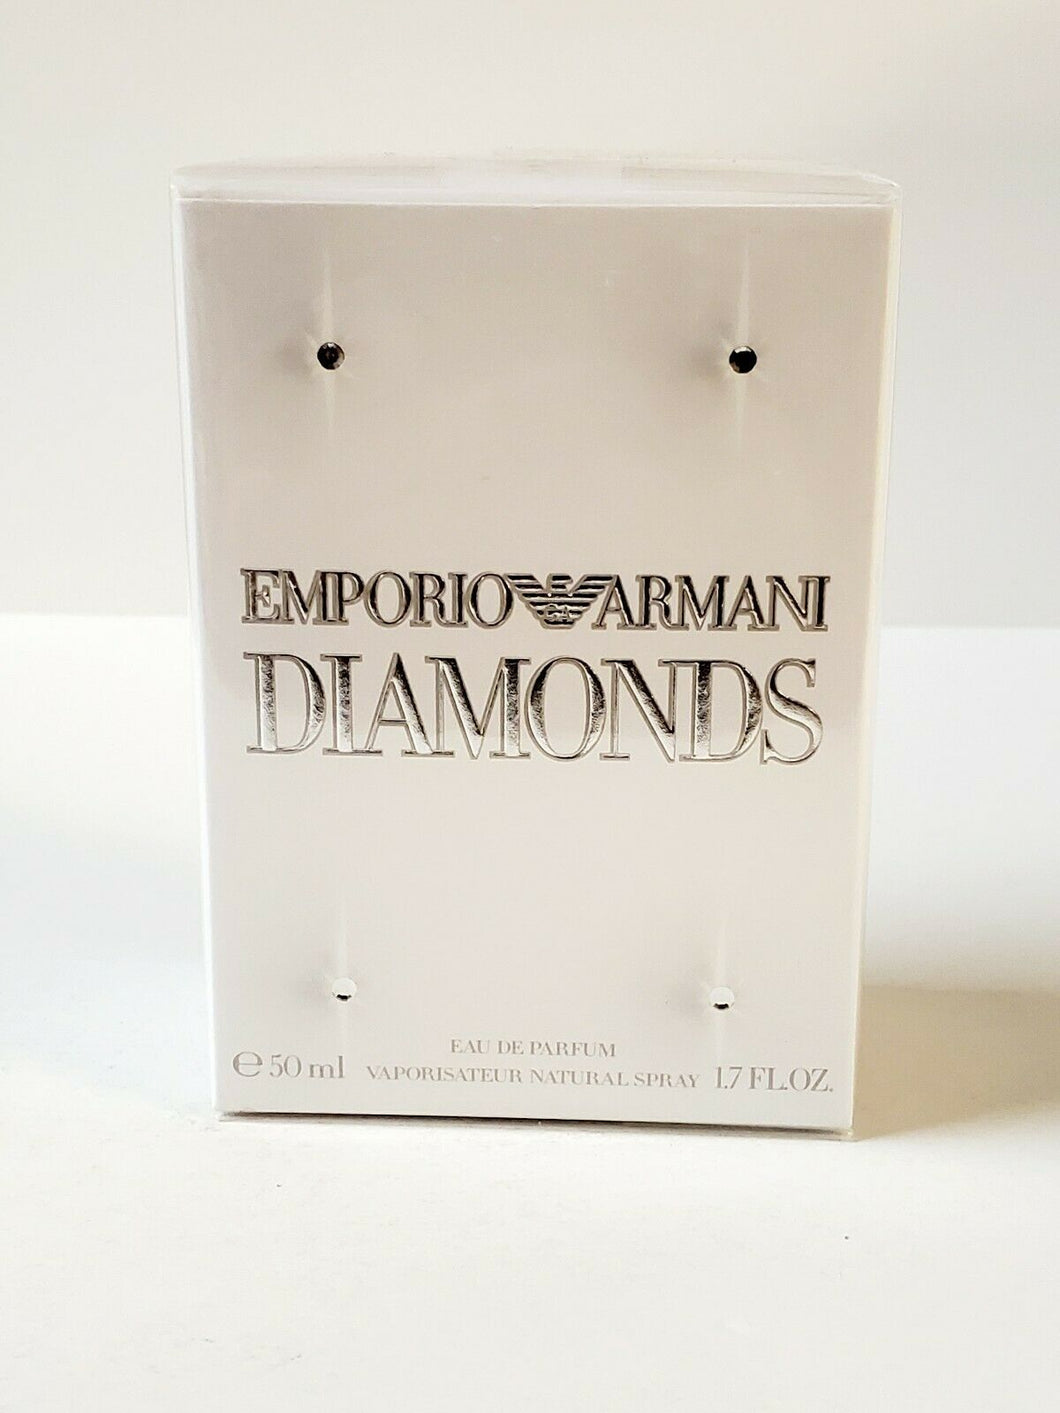 Emporio Armani Diamonds by Giorgio Armani 1.7 oz EDP Perfume for Women ** SEALED - Perfume Gallery